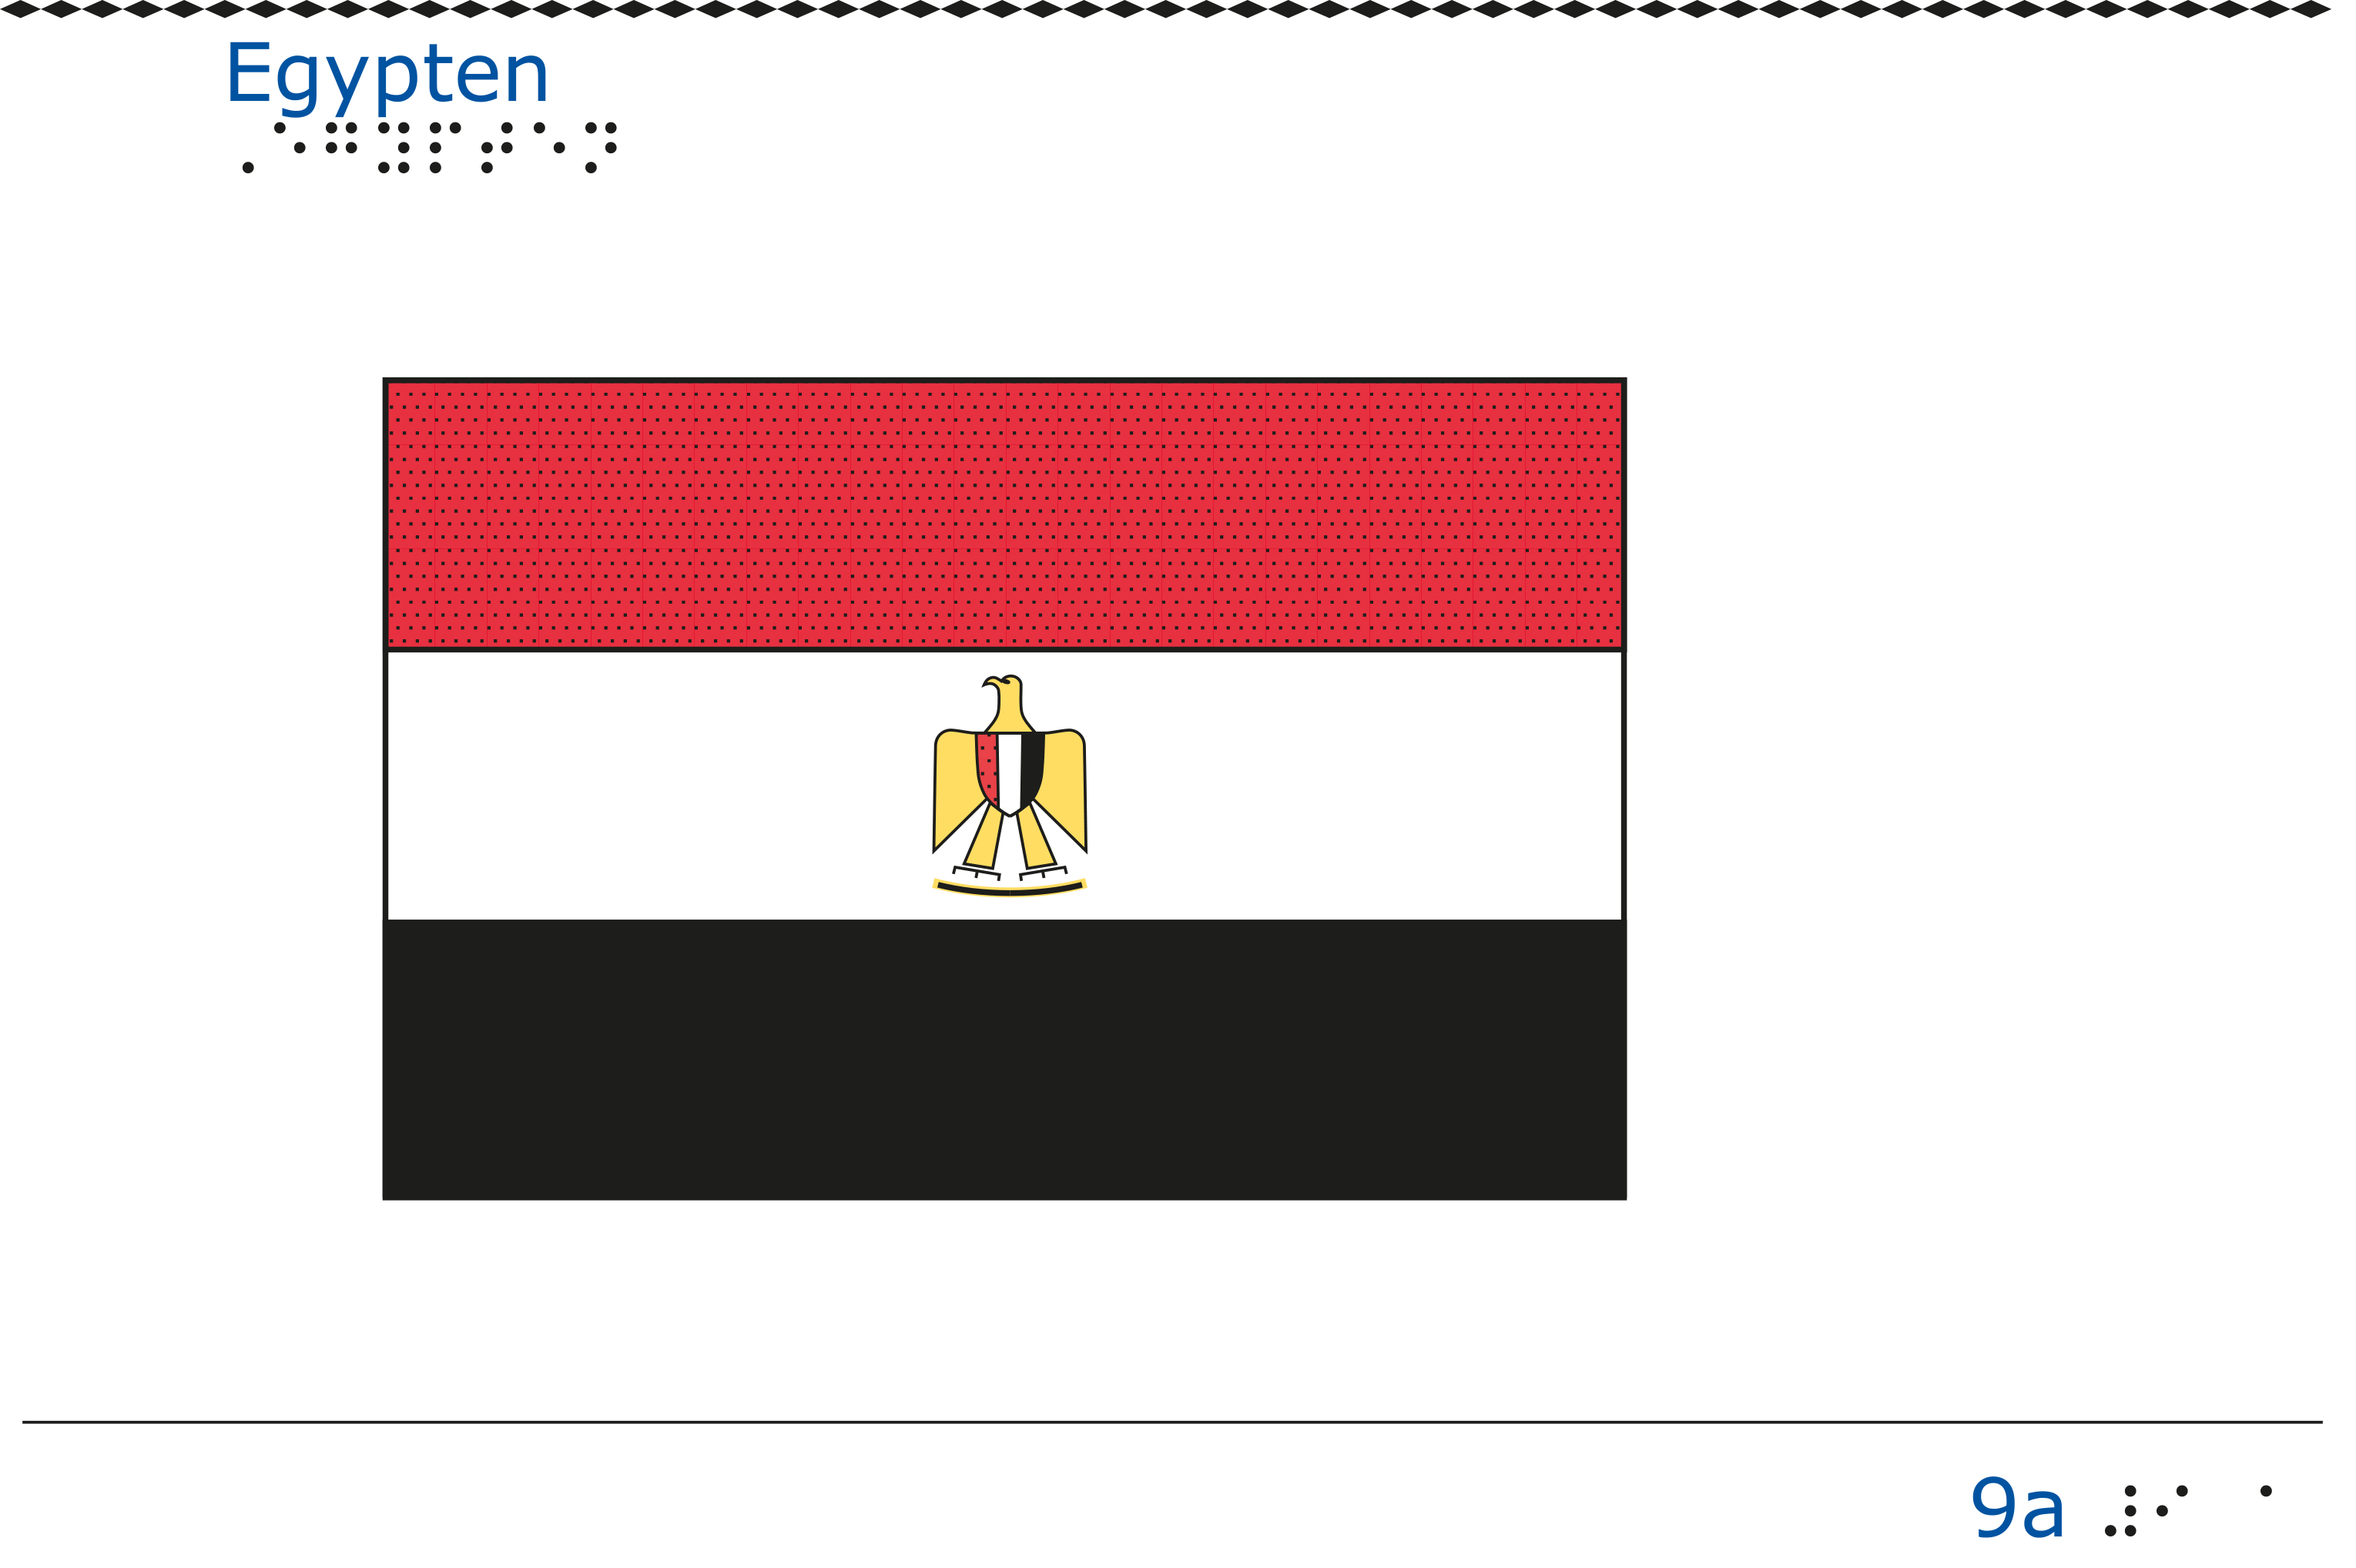 Taktil bild - Egyptens flagga.